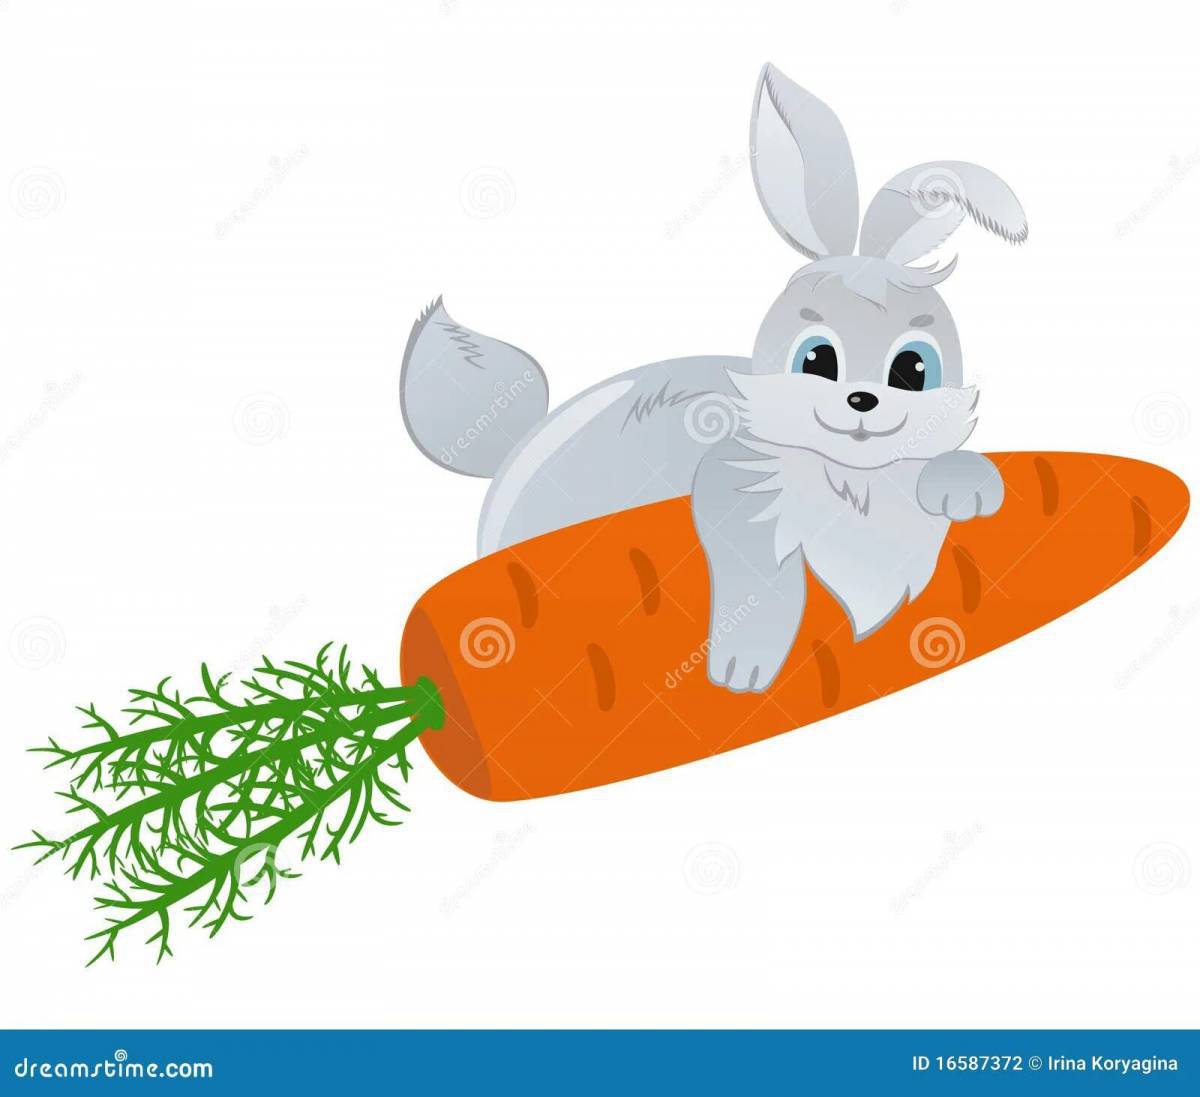 Заяц с морковкой для детей #30